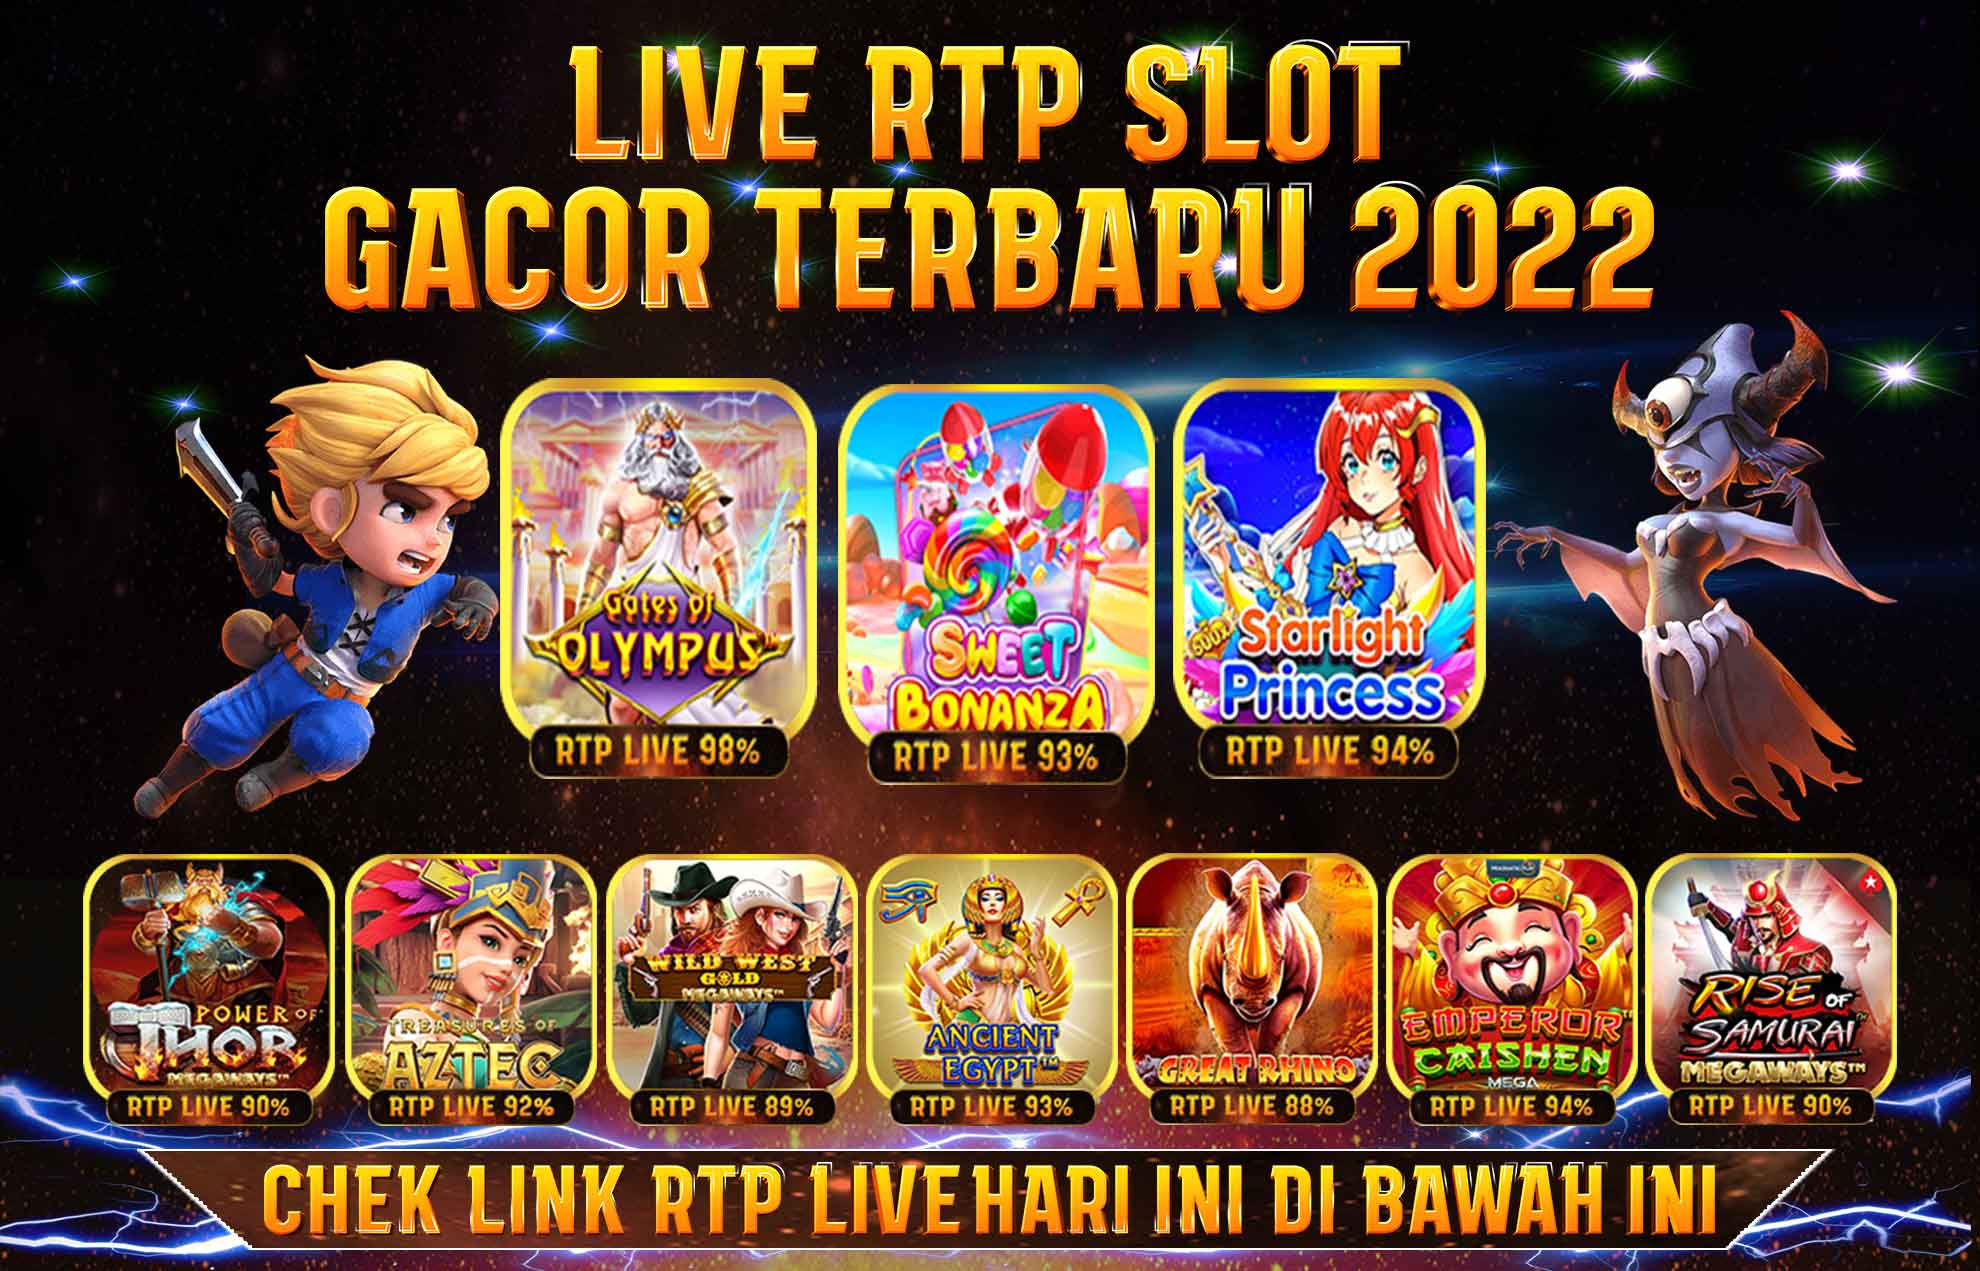 Info Bocoran Slot Gacor Hari ini Gampang Menang & Bocoran RTP Live Slot Gacor Terbaru Resmi Terpercaya 2022-2023 - Xiaomi Community